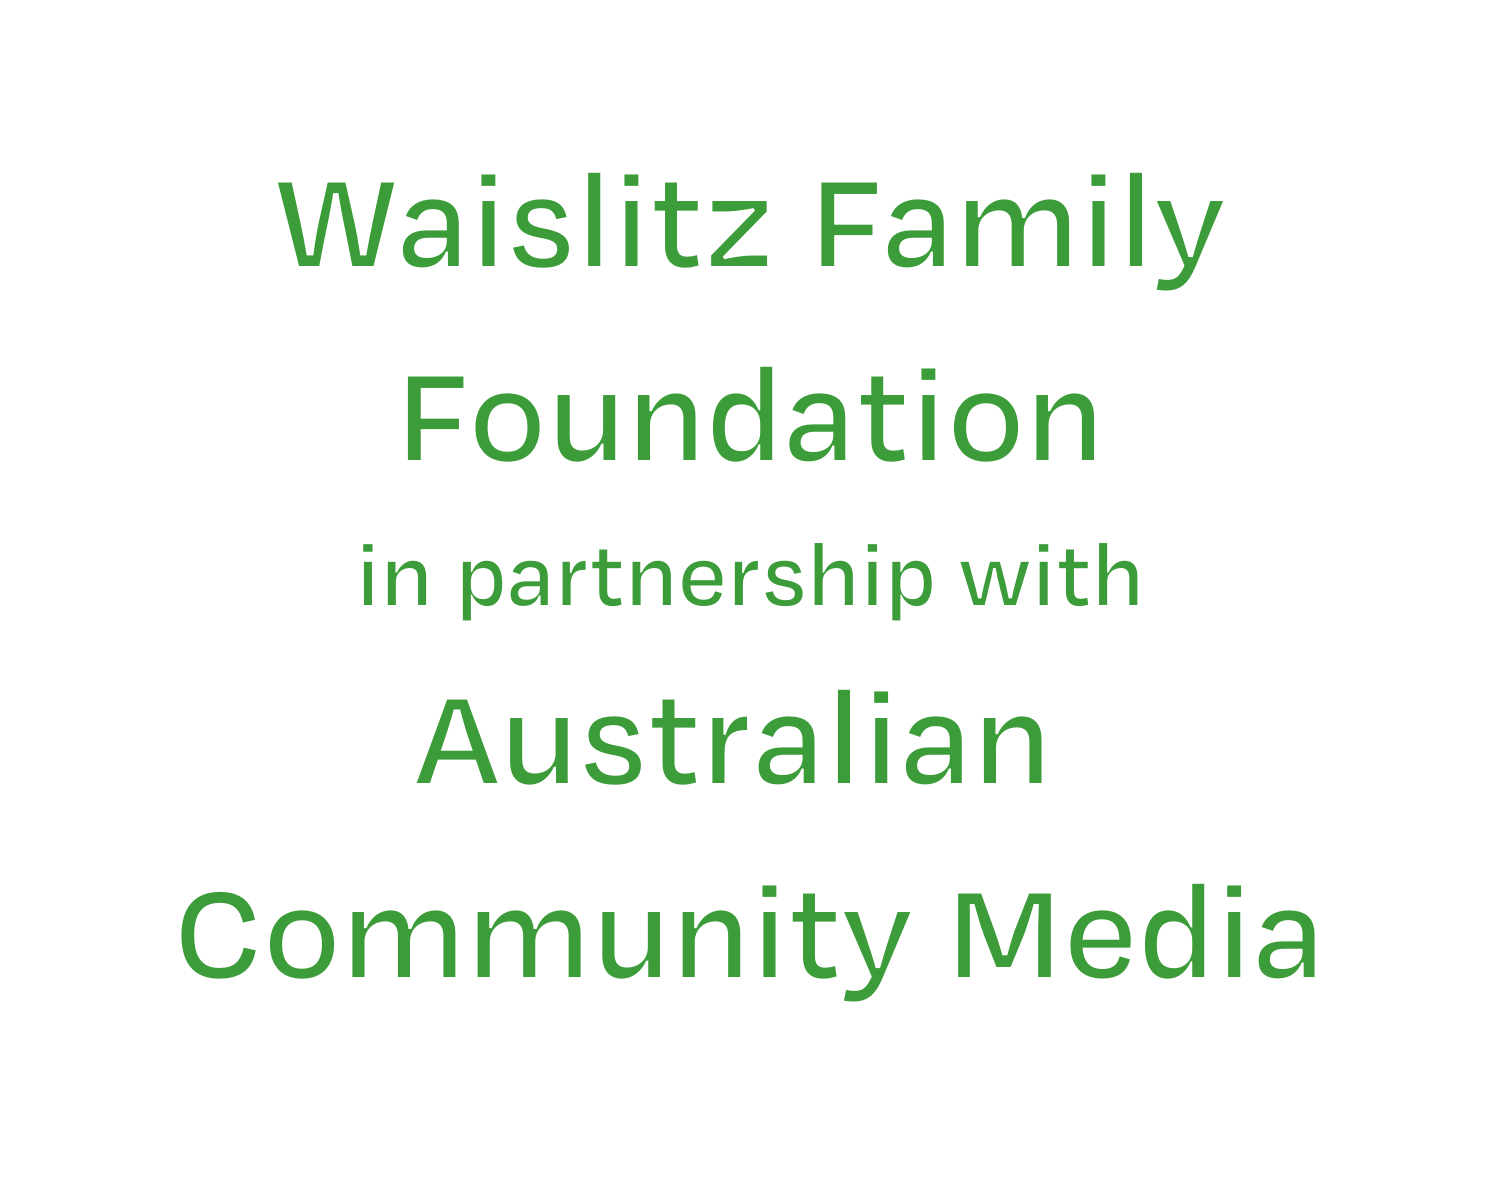 Waislitz Family Foundation in partnership with Australian Community Media